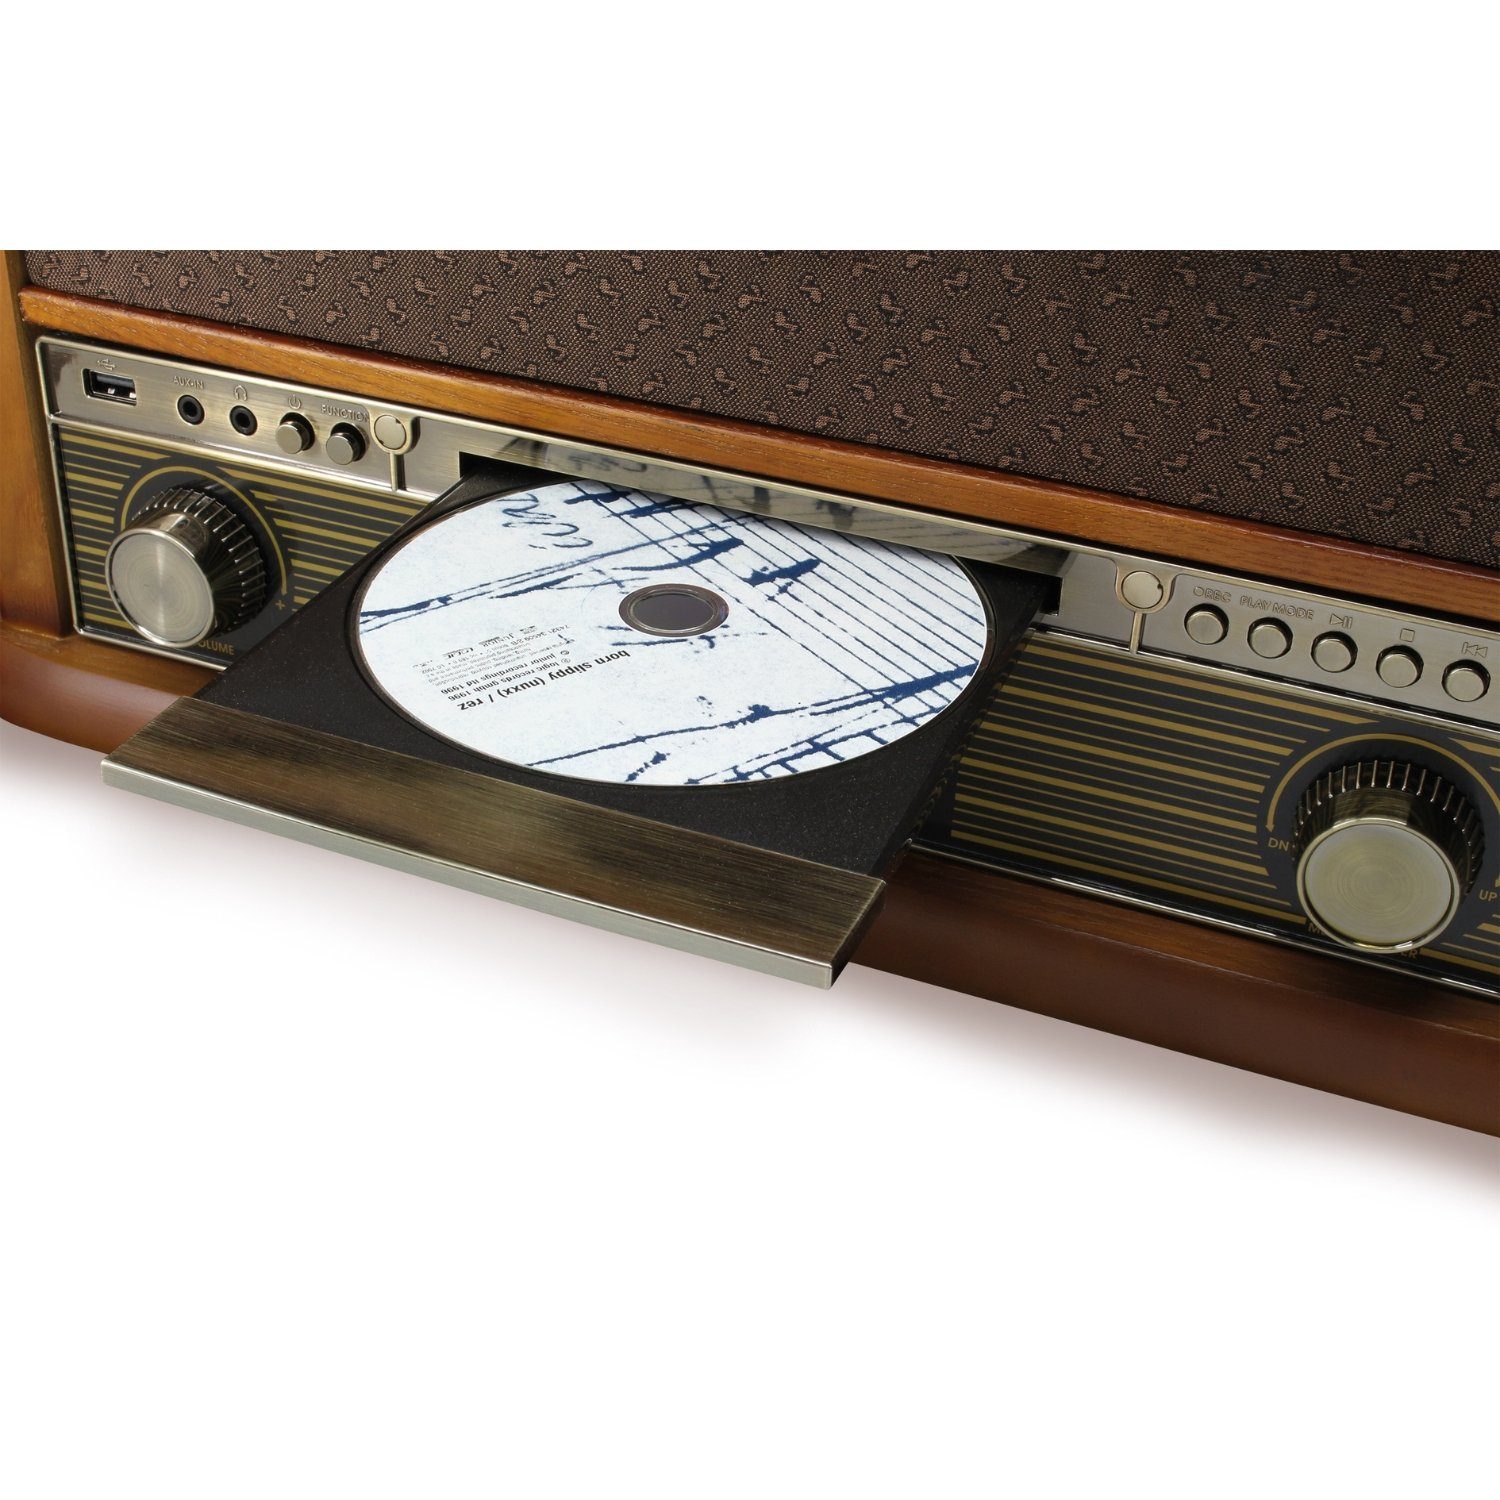 NR560 Kompaktanlage SF510 Nostalgie mit Set Stereoanlage Untergestell inkl. Soundmaster